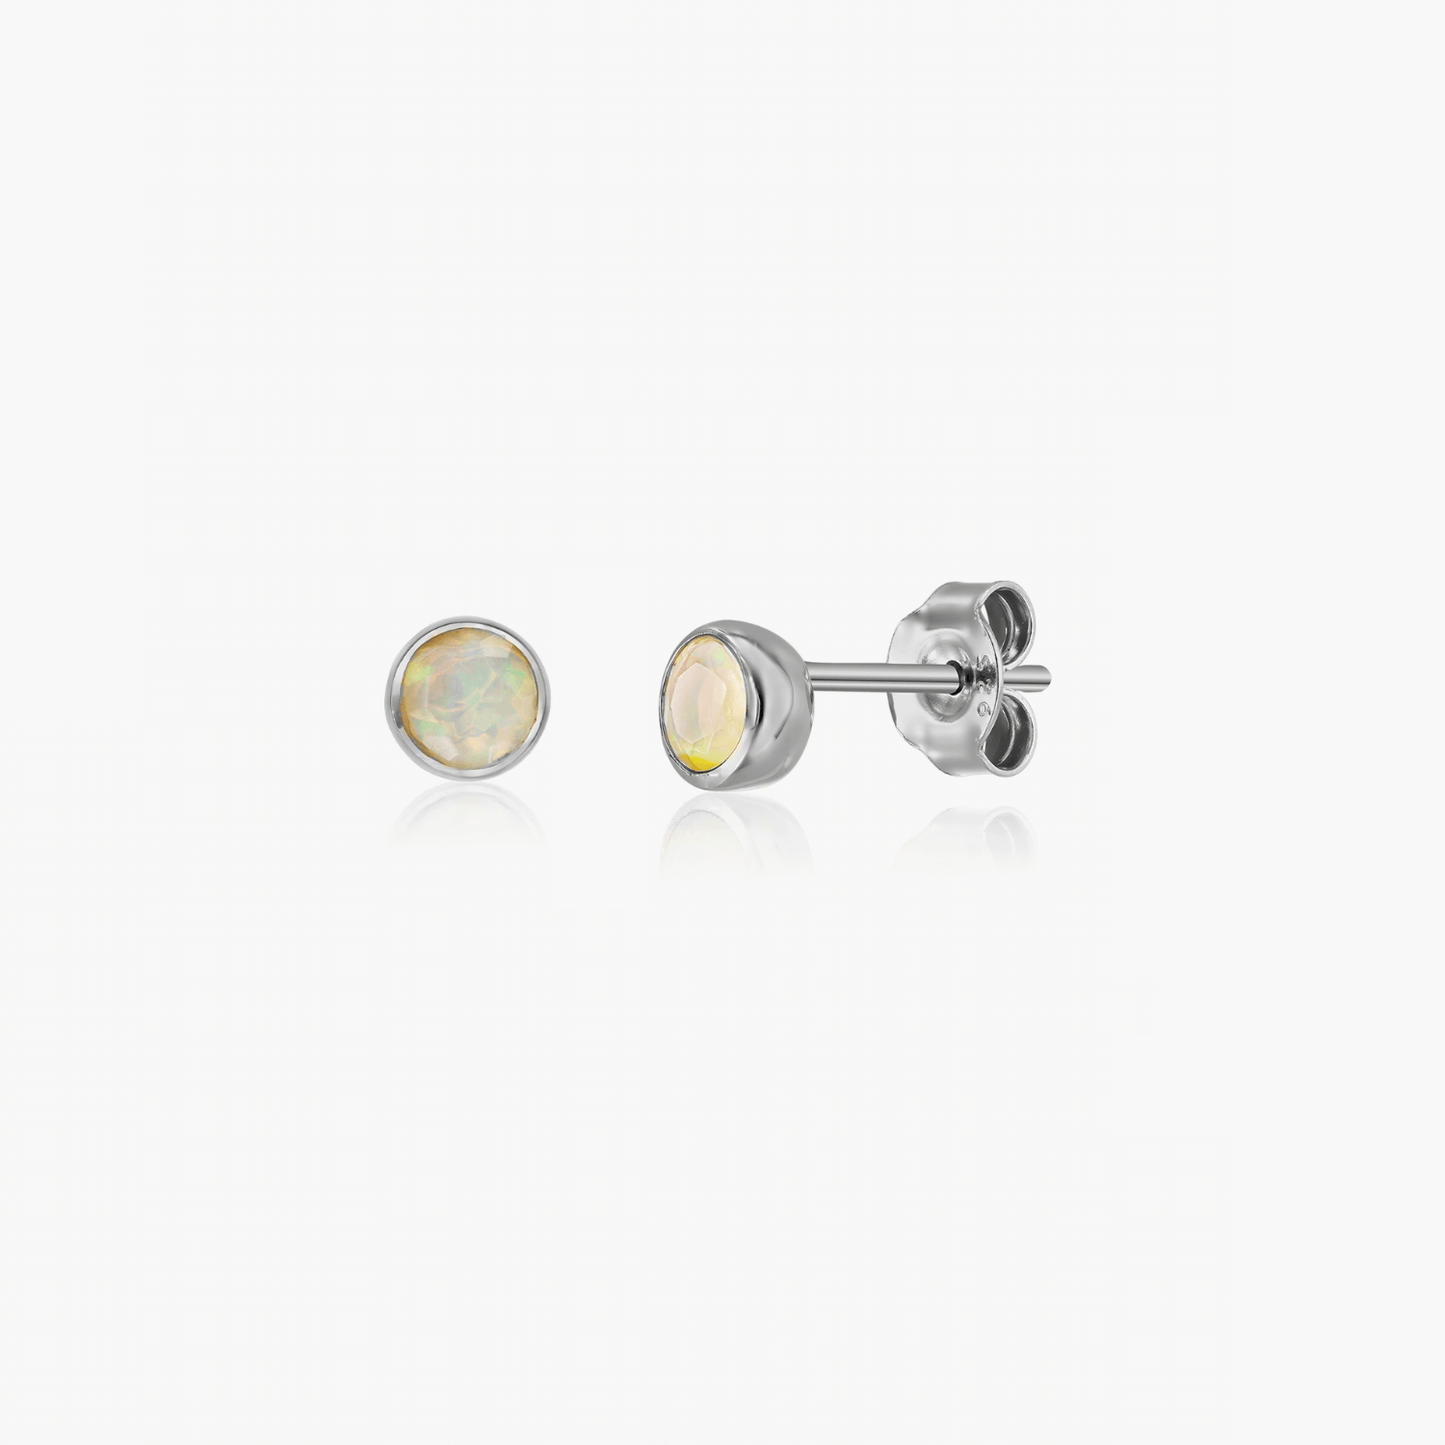 Silver earrings Birthstone October - Opal